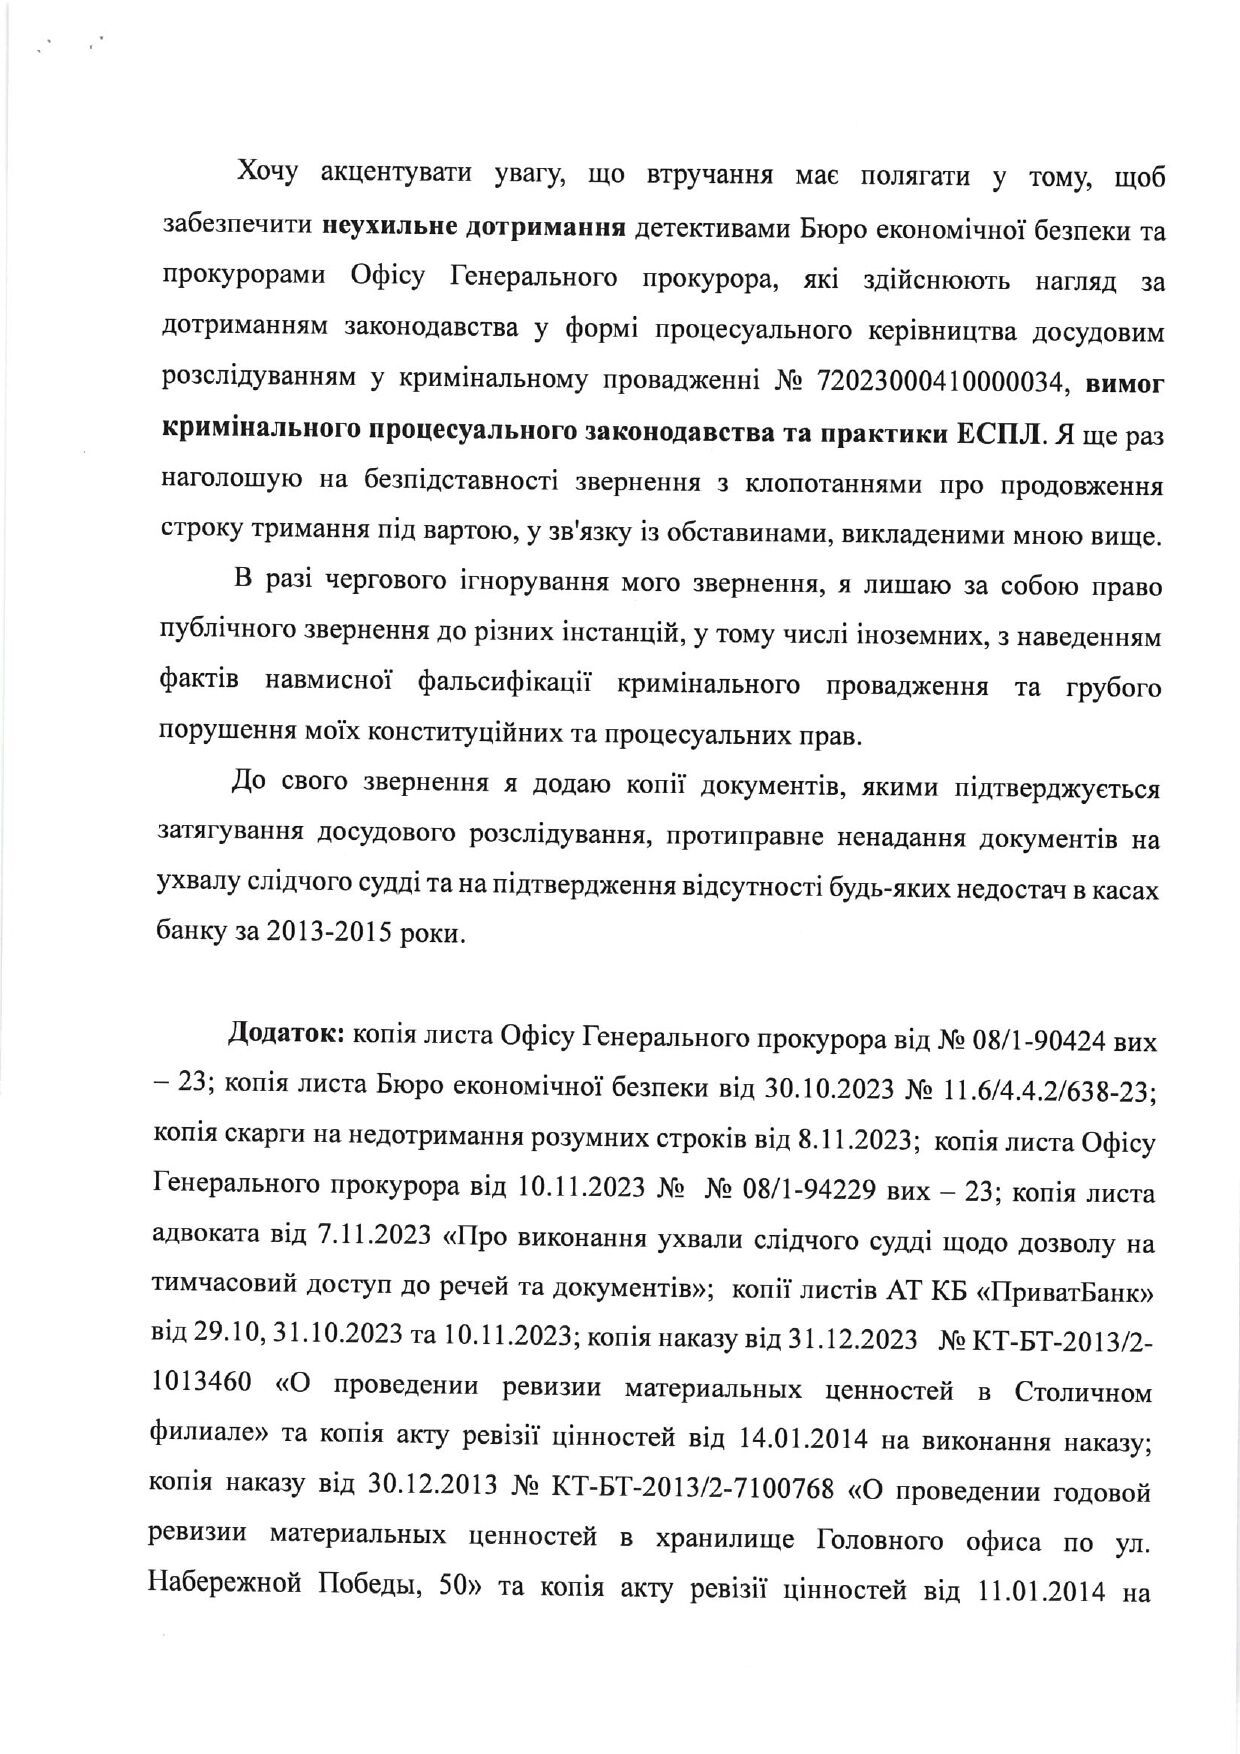 Коломойський звернувся до генпрокурора Костіна і закликав згадати про права людини